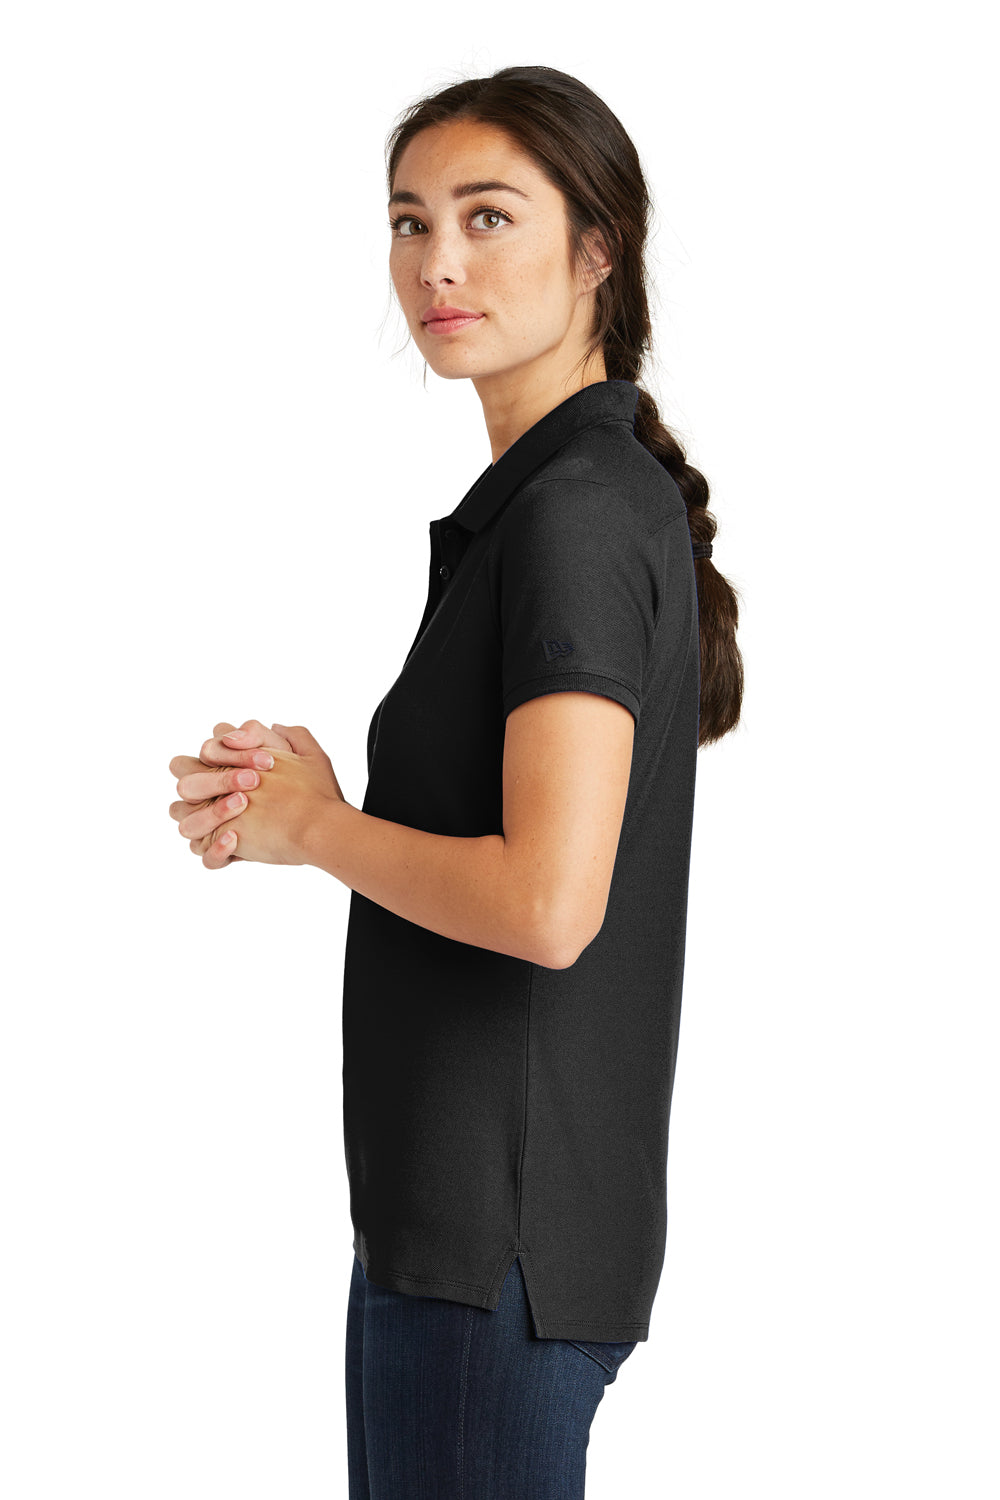 New Era LNEA300 Womens Venue Home Plate Moisture Wicking Short Sleeve Polo Shirt Black Side